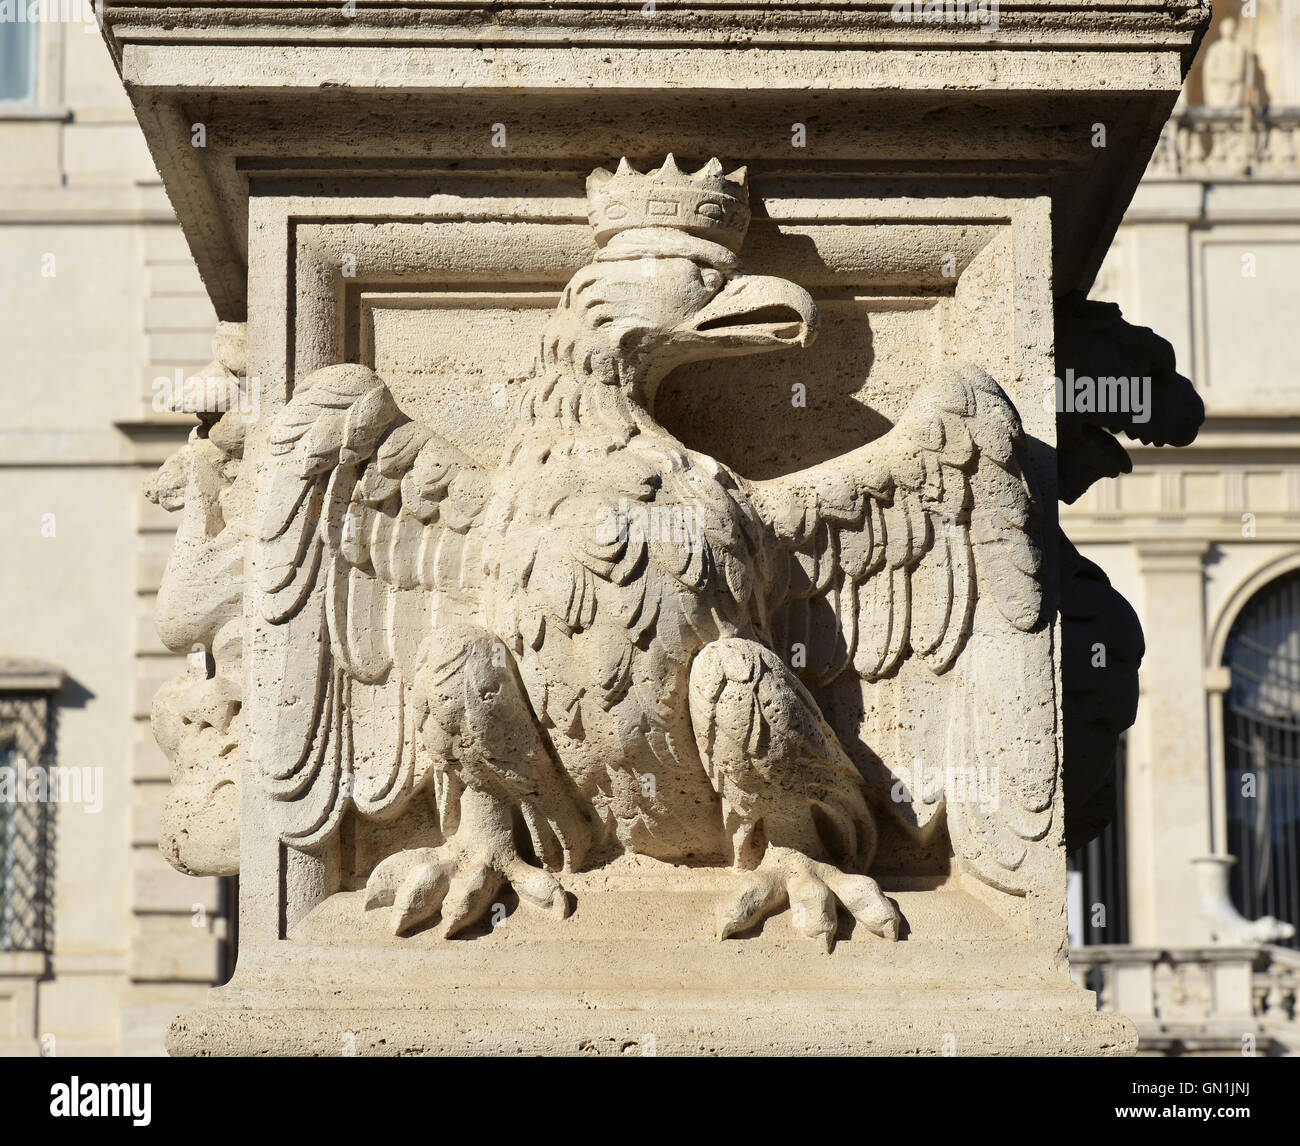 Aquila coronata, emblema della casa borghese della nobile famiglia italiana, dal barocco balaustra in Villa Borghese parco pubblico, Roma Foto Stock